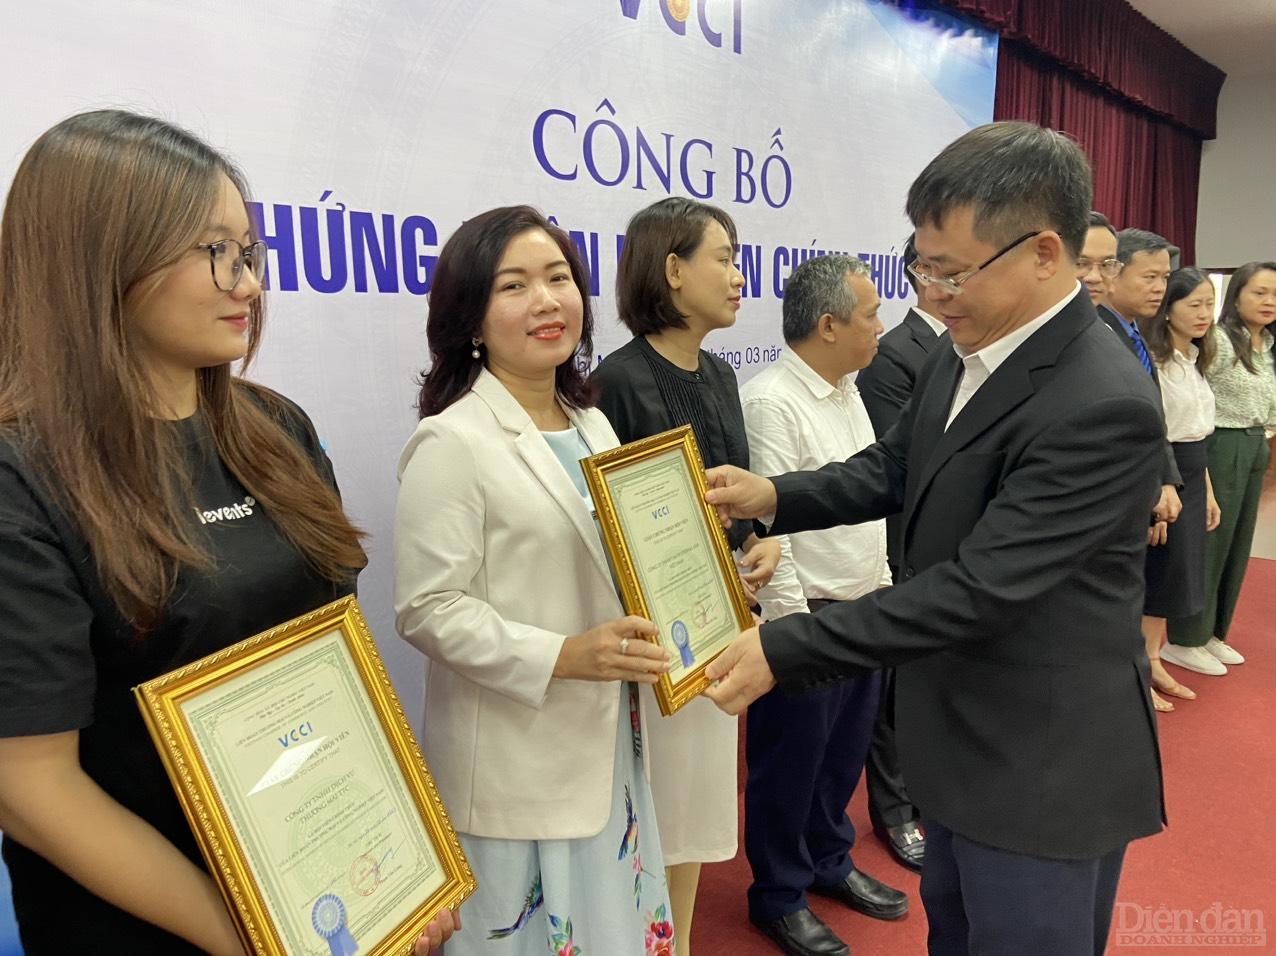 Giám VCCI HCM Trần Ngọc Liêm trao chứng nhận Hội viên chính thức cho các doanh nghiệp - Ảnh: Đình Đại.